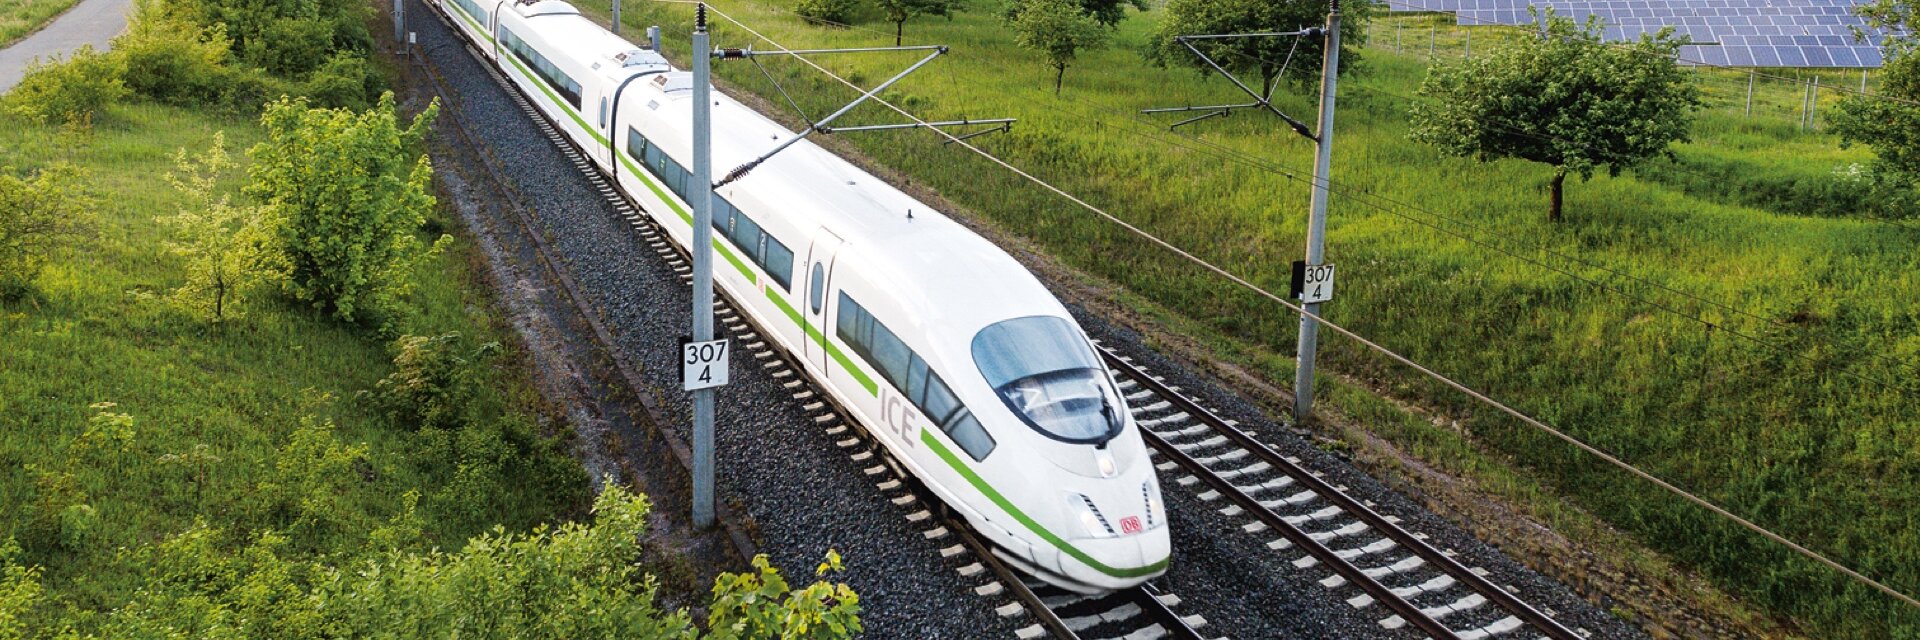 Case Study: Deutsche Bahn AG - The Green Transformation - Impression #1